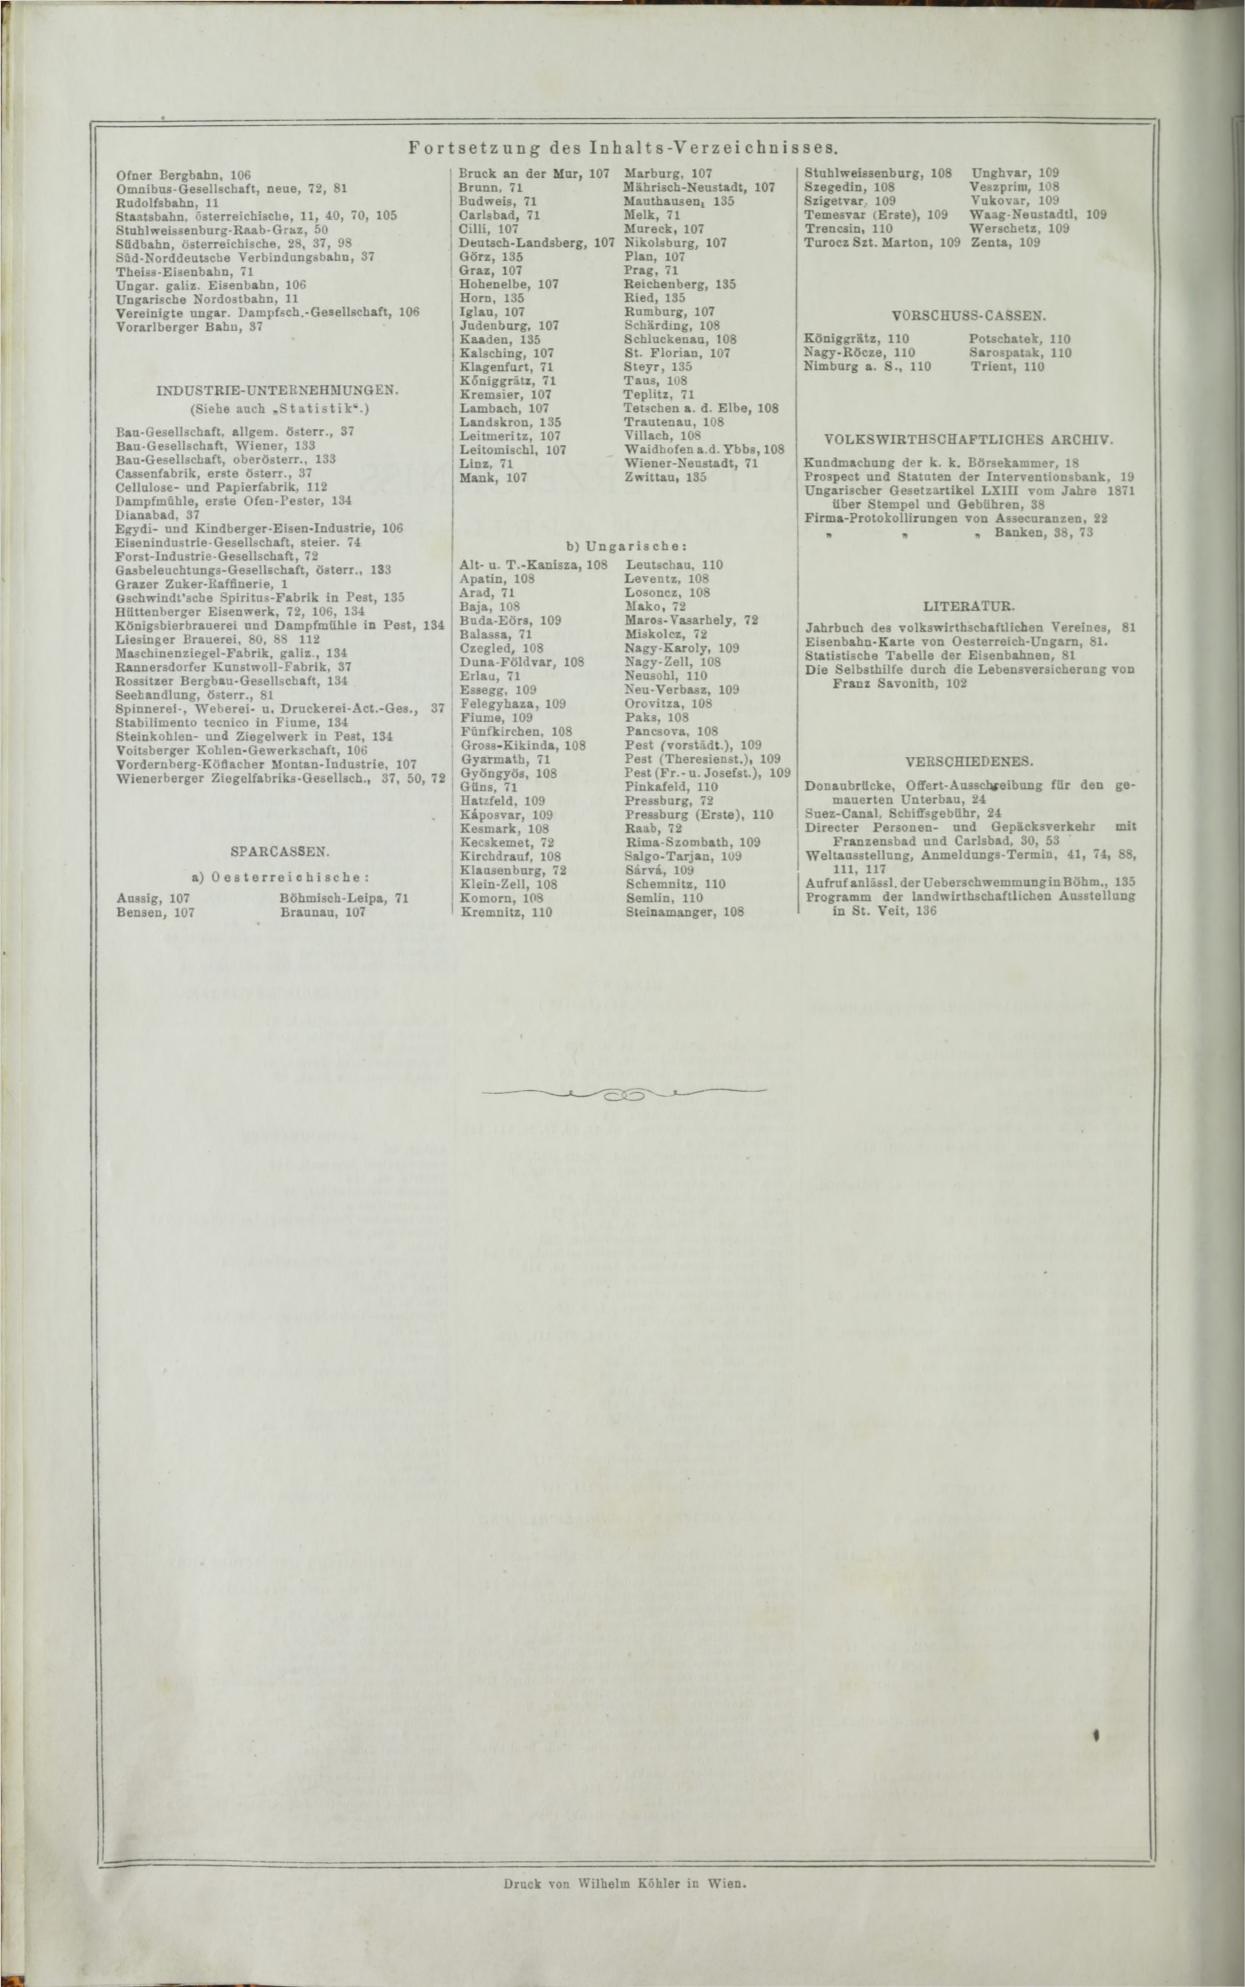 Der Tresor 14.05.1872 - Page 32